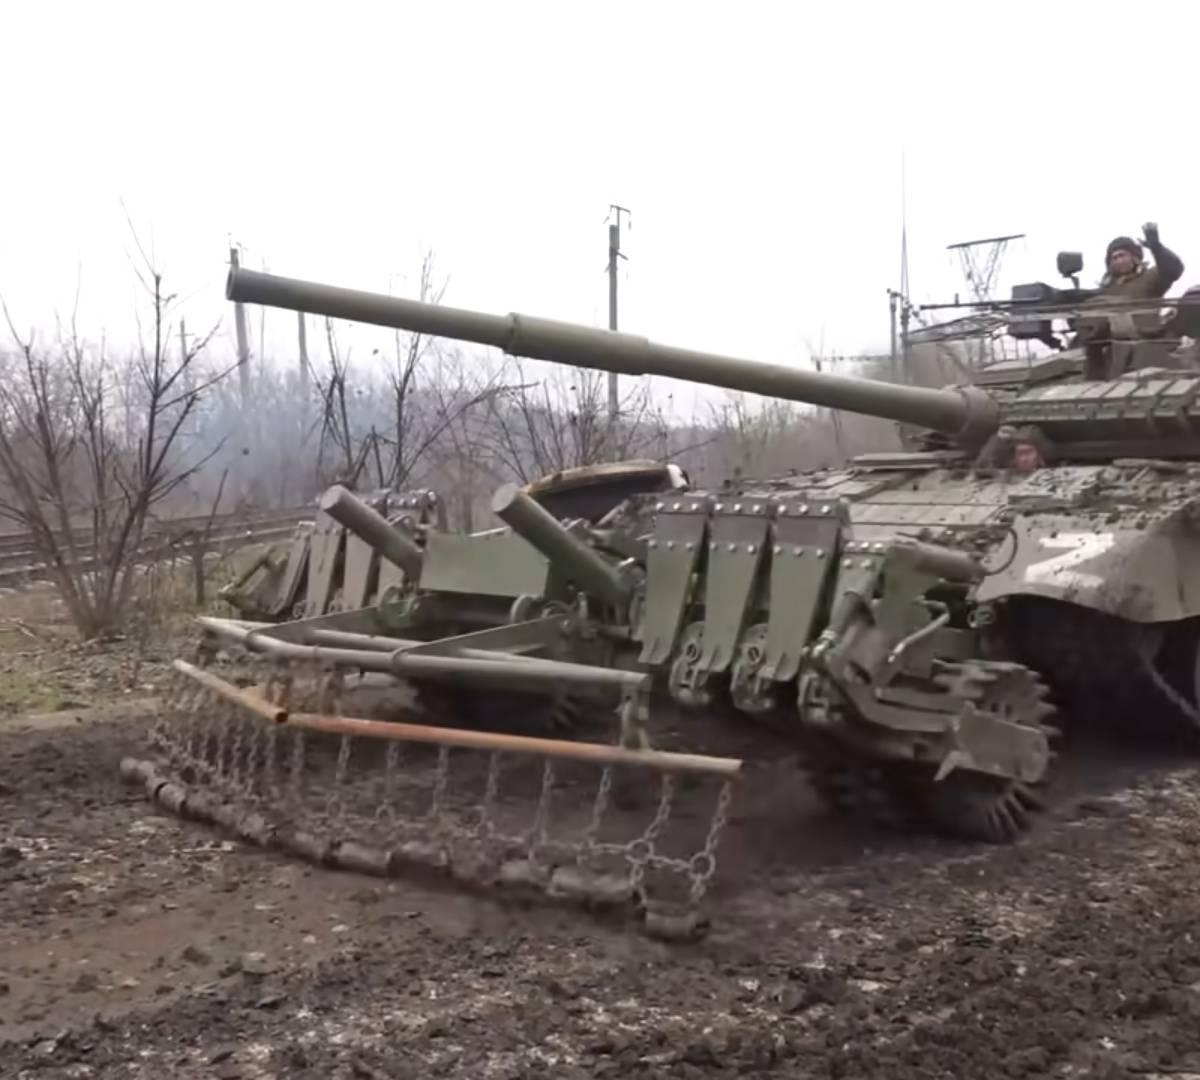 Т-80БВ получили новые противоминные тралы и защитные "зонтики"